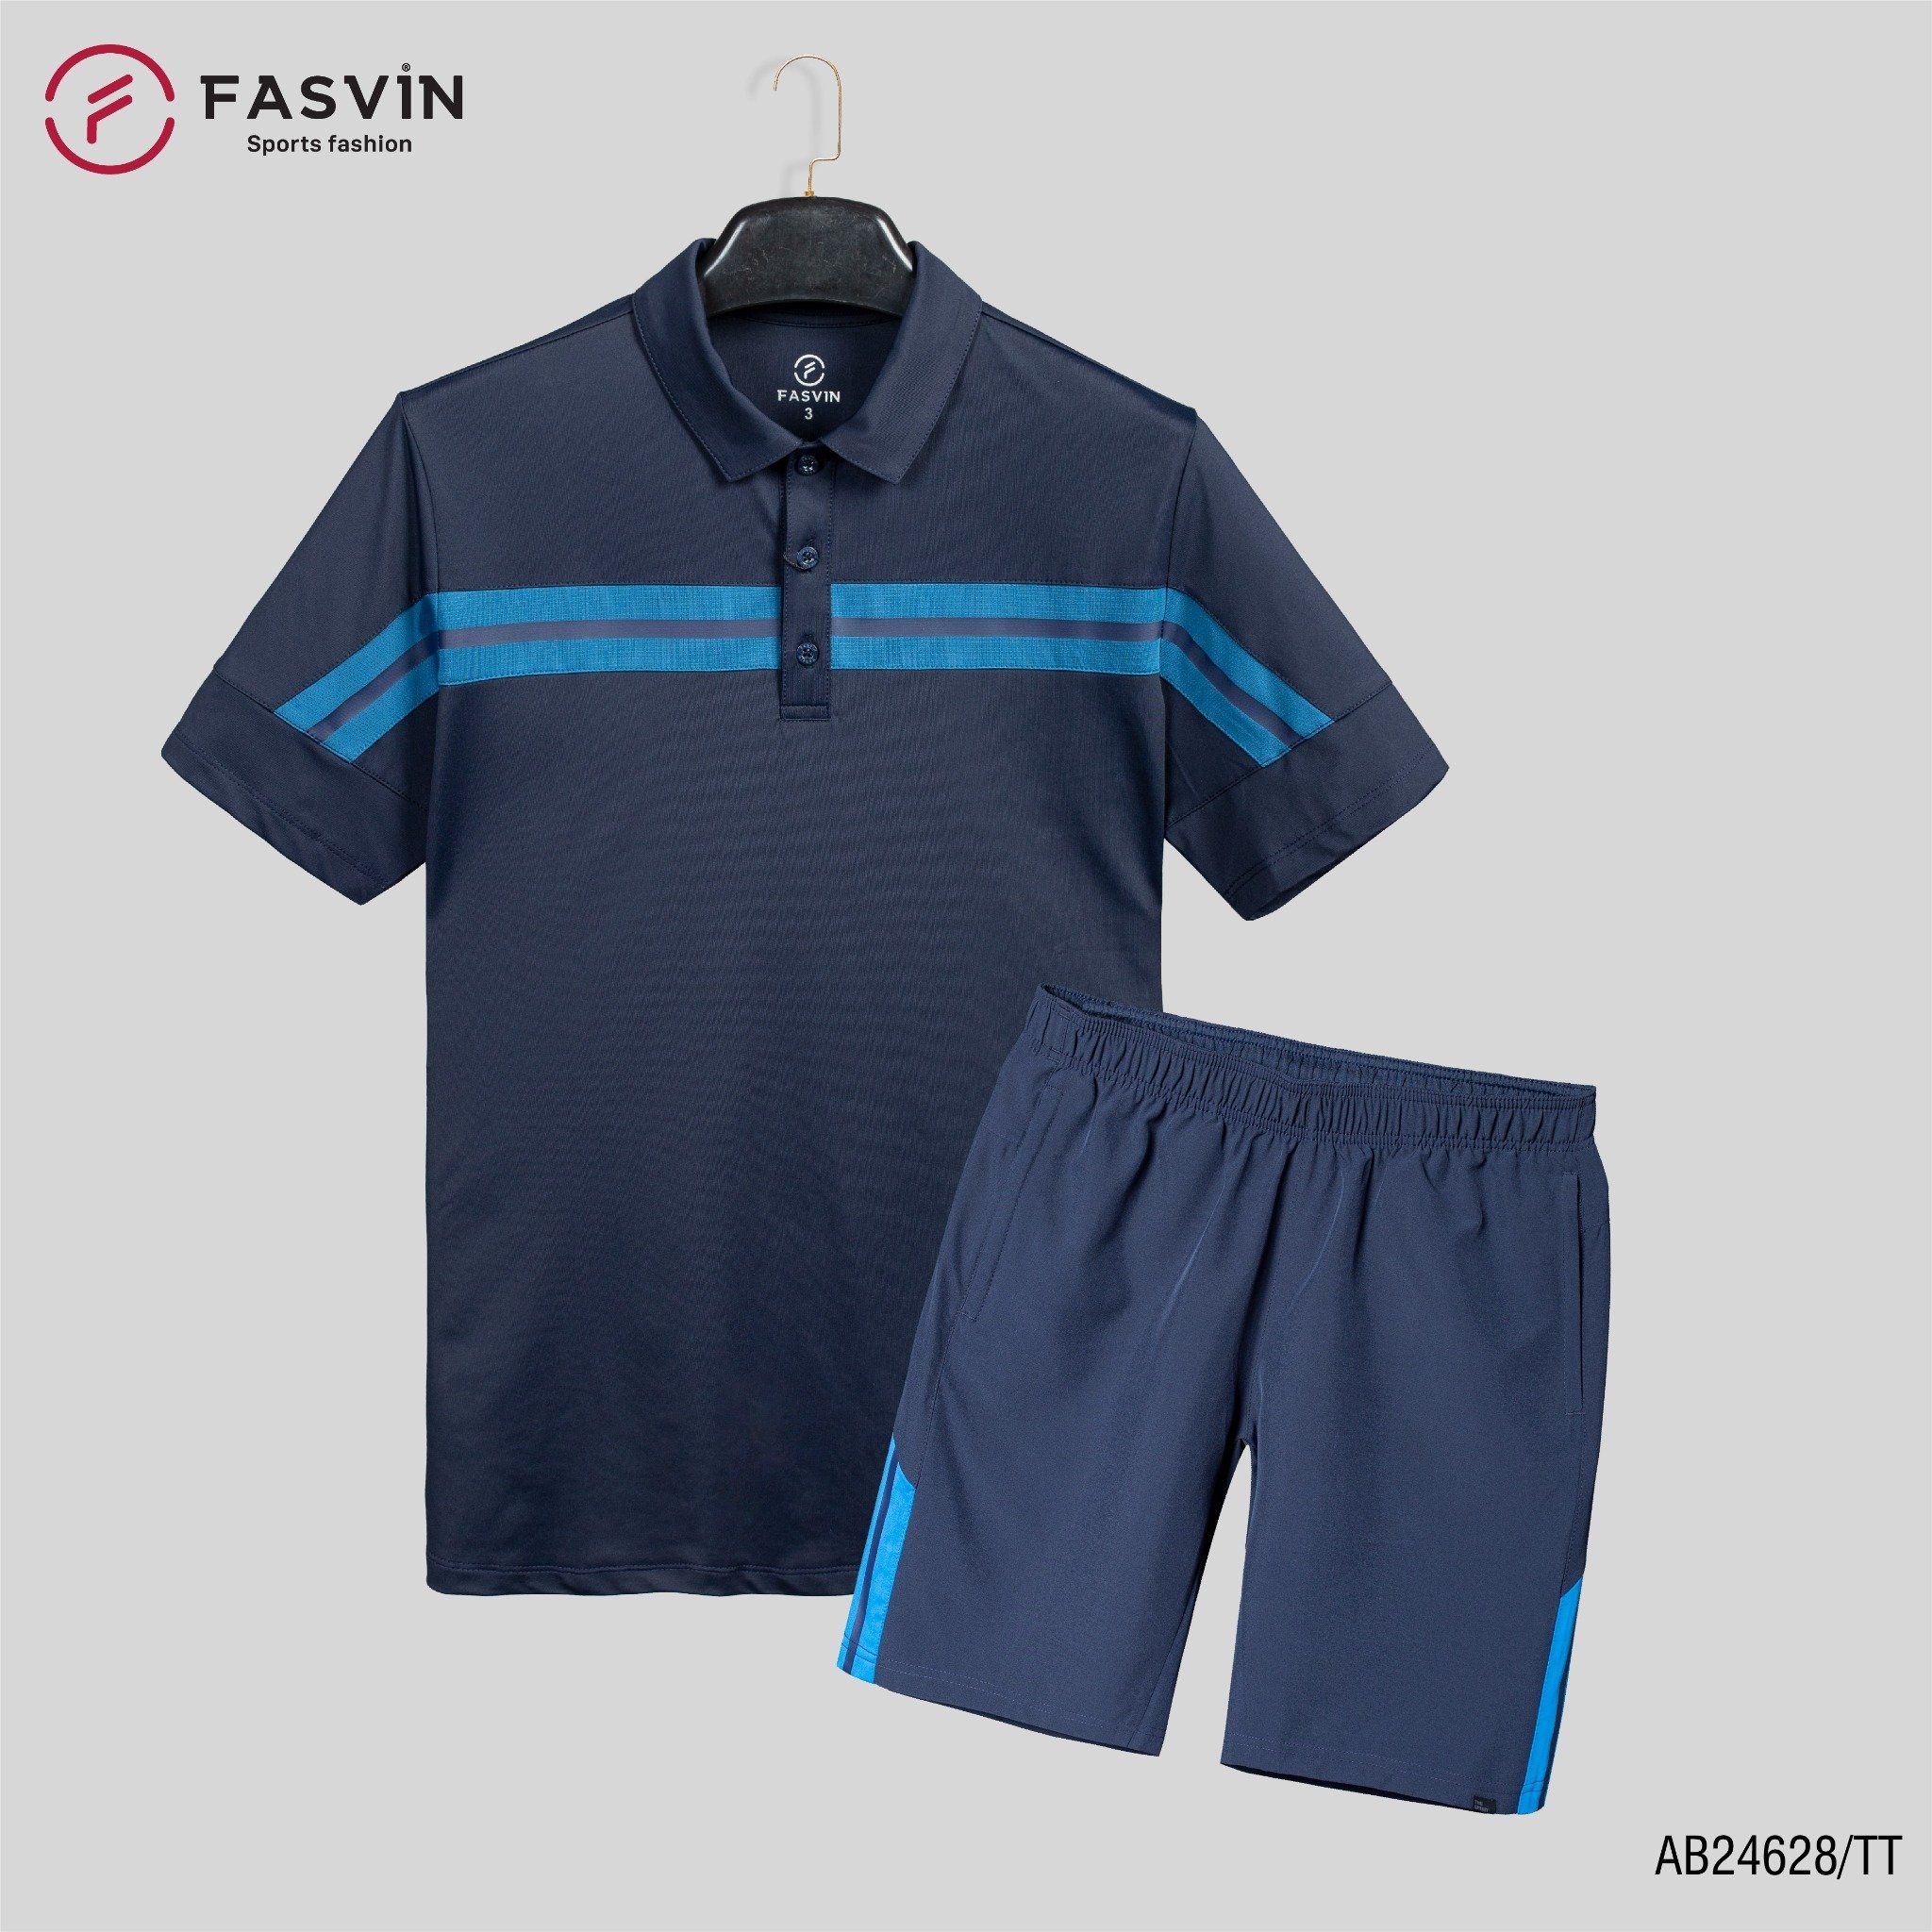  Bộ quần áo thể thao nam FASVIN AB24628 chất vải mềm nhẹ co giãn thoải mái 